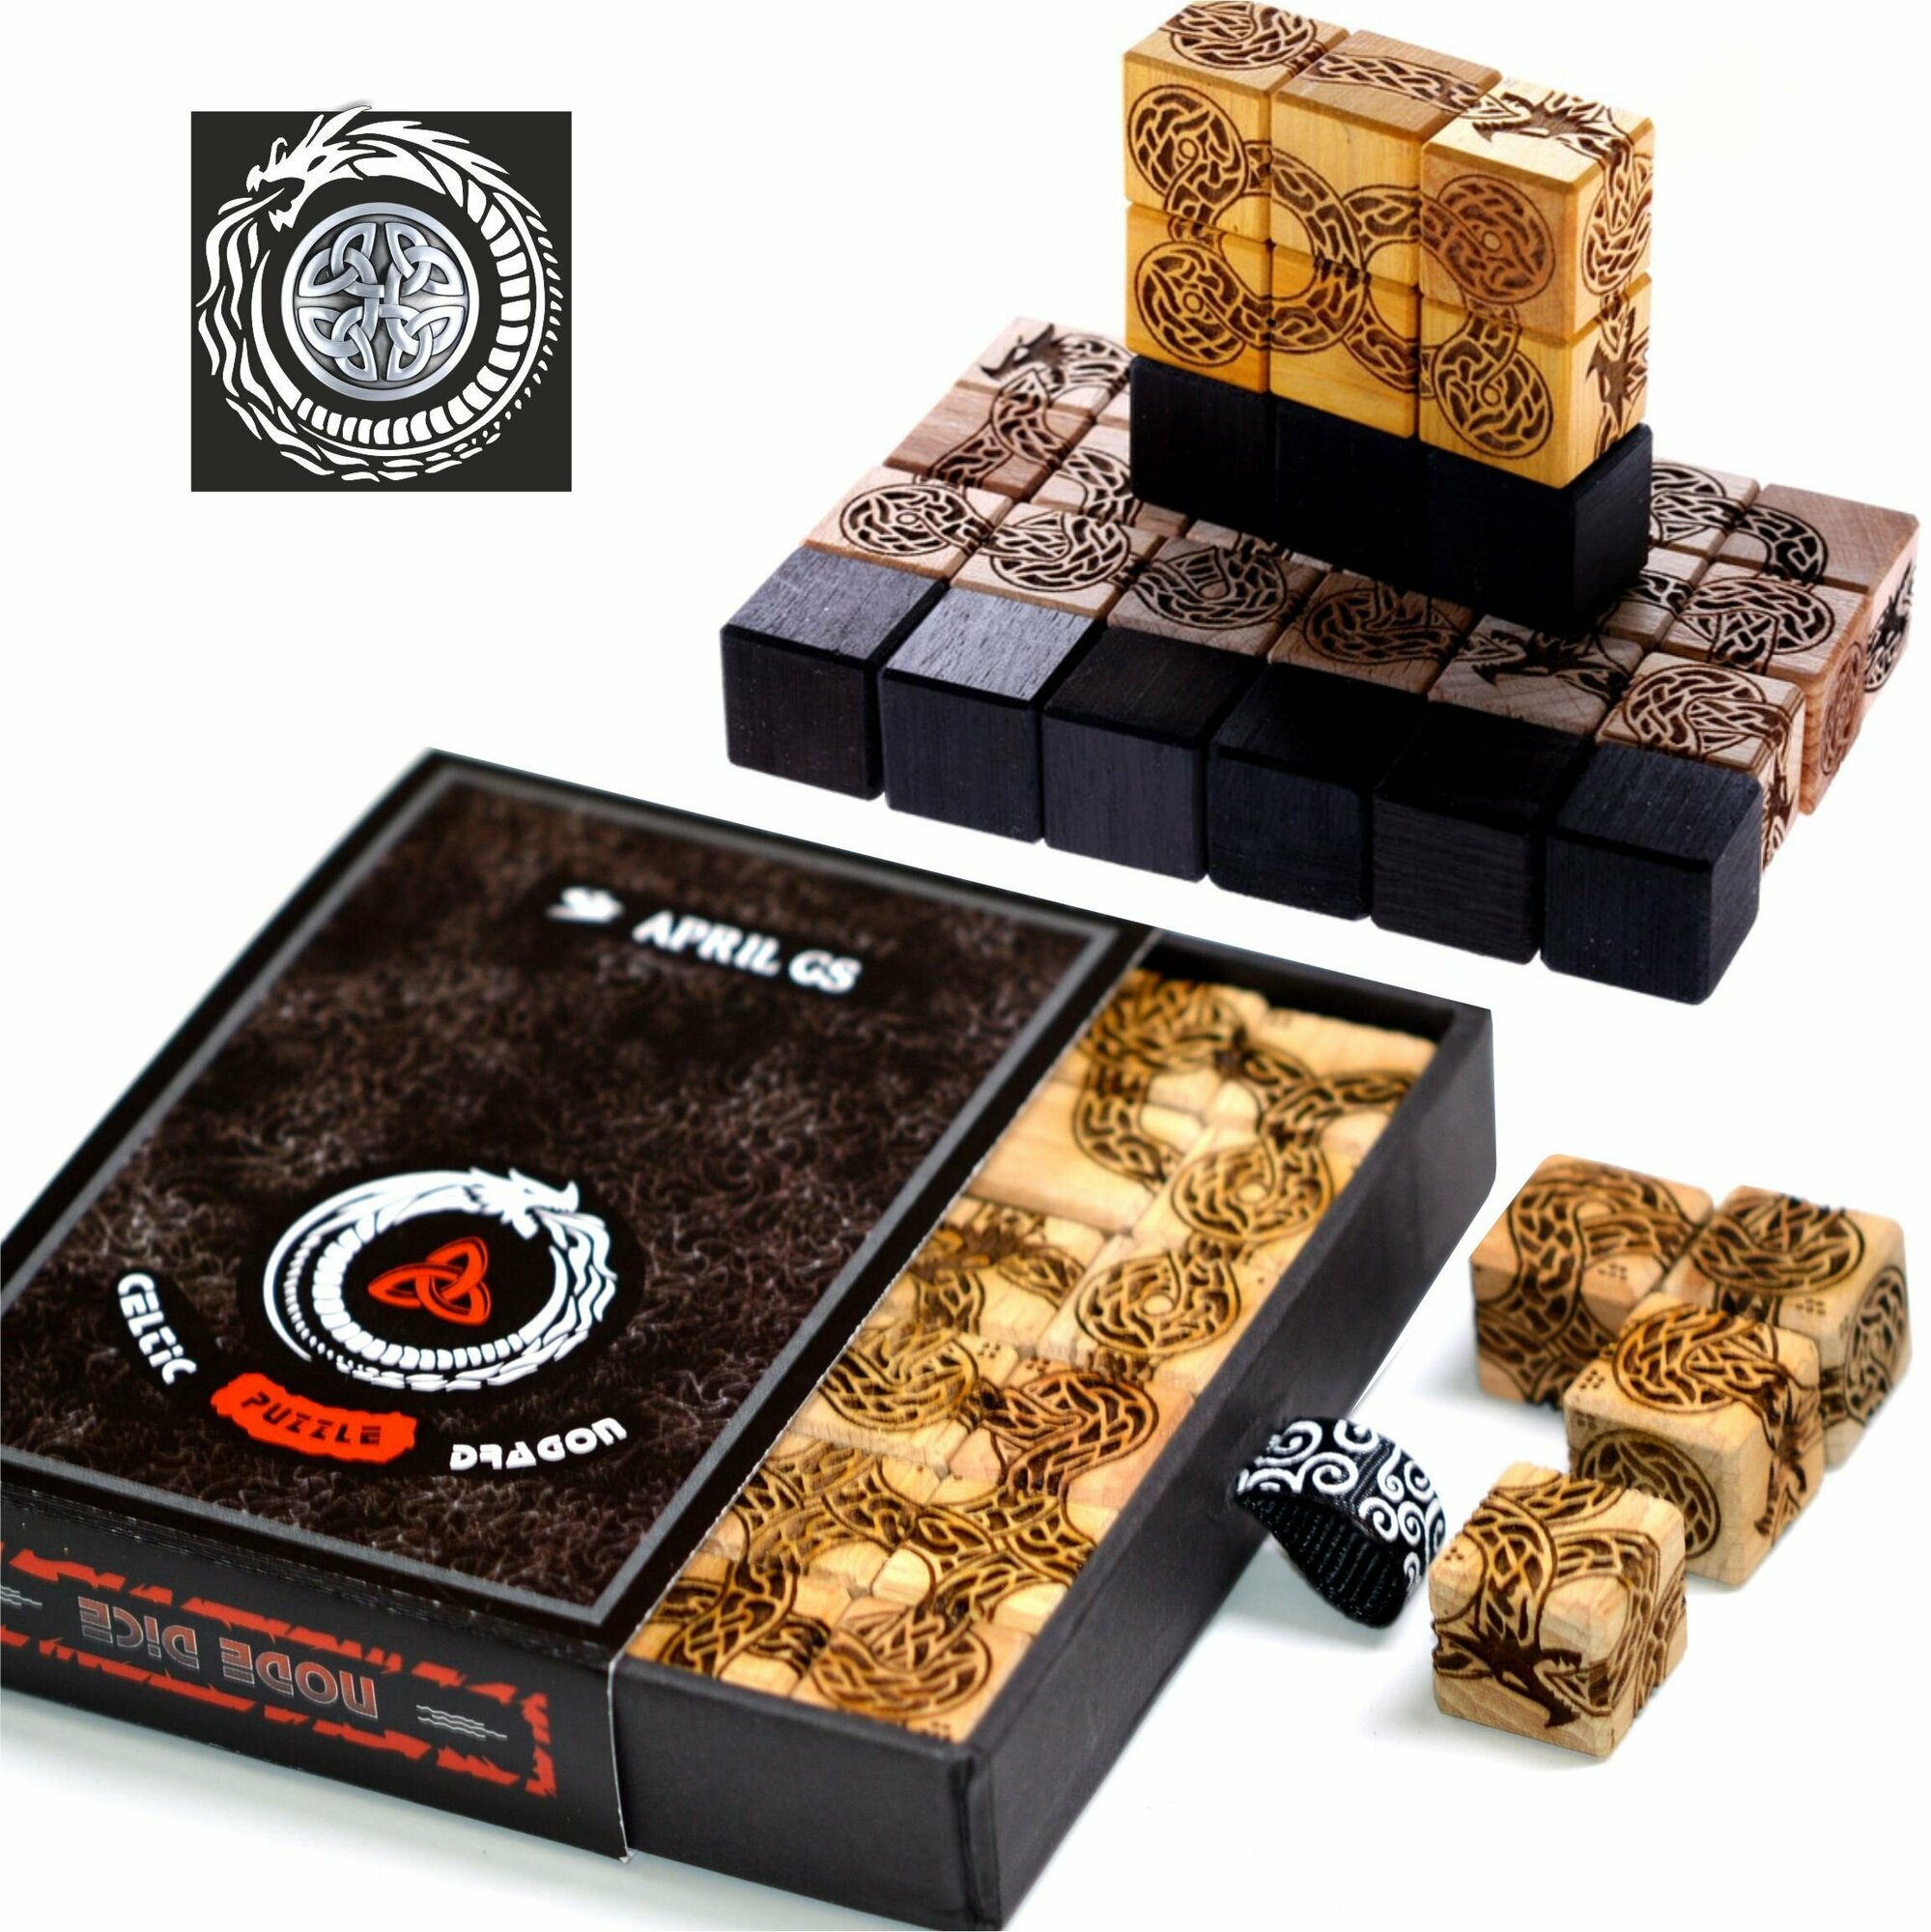 Настольная игра Кельтский Дракон Уроборос, 3D Головоломка от April GS / Собери узелки ползущего змея. Кубики из экзотической древесины-24 шт. в наборе, размер 16мм. Поставляется в картонной коробке